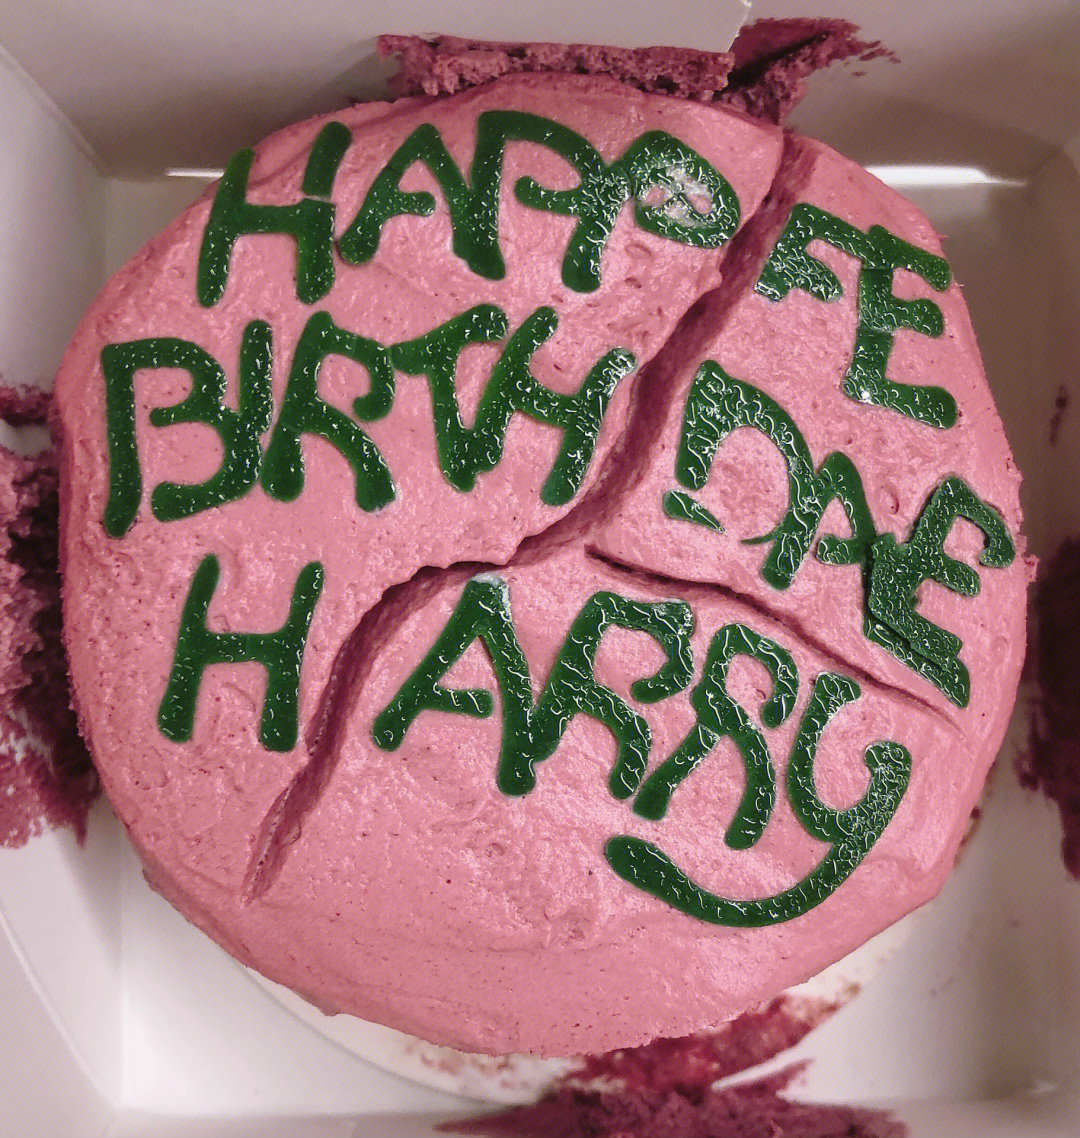 哈利波特蛋糕做法图片